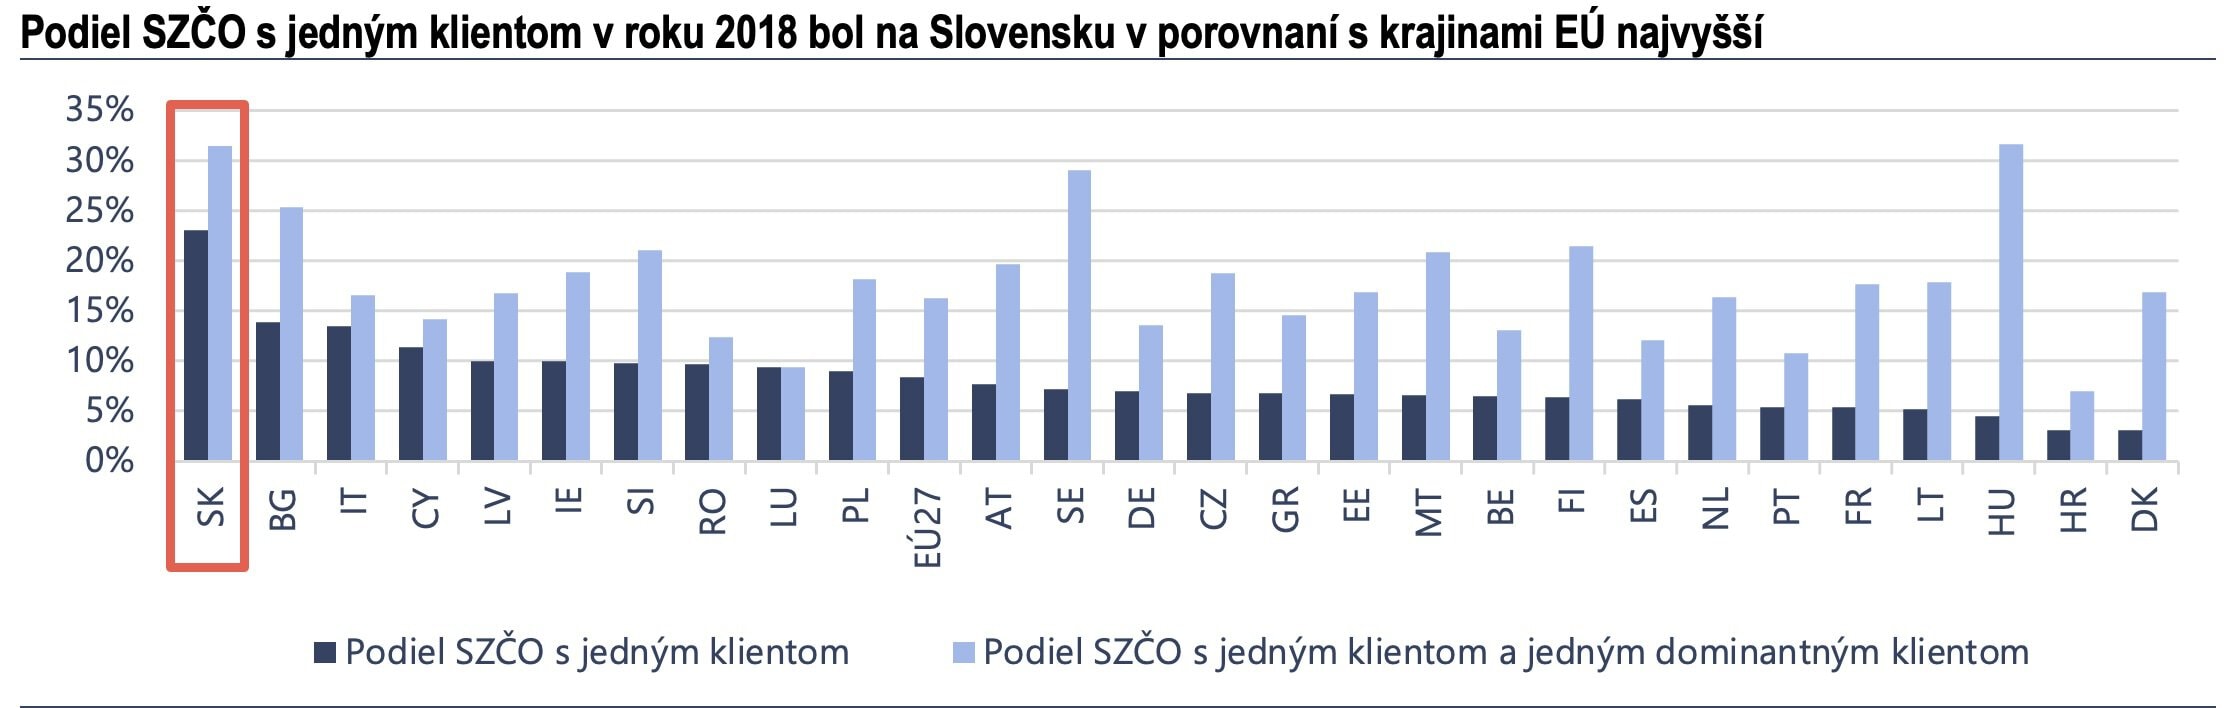 Podiel SZČO s jedným klientom v roku 2018 bol na Slovensku v porovnaní s krajinami EÚ najvyšší